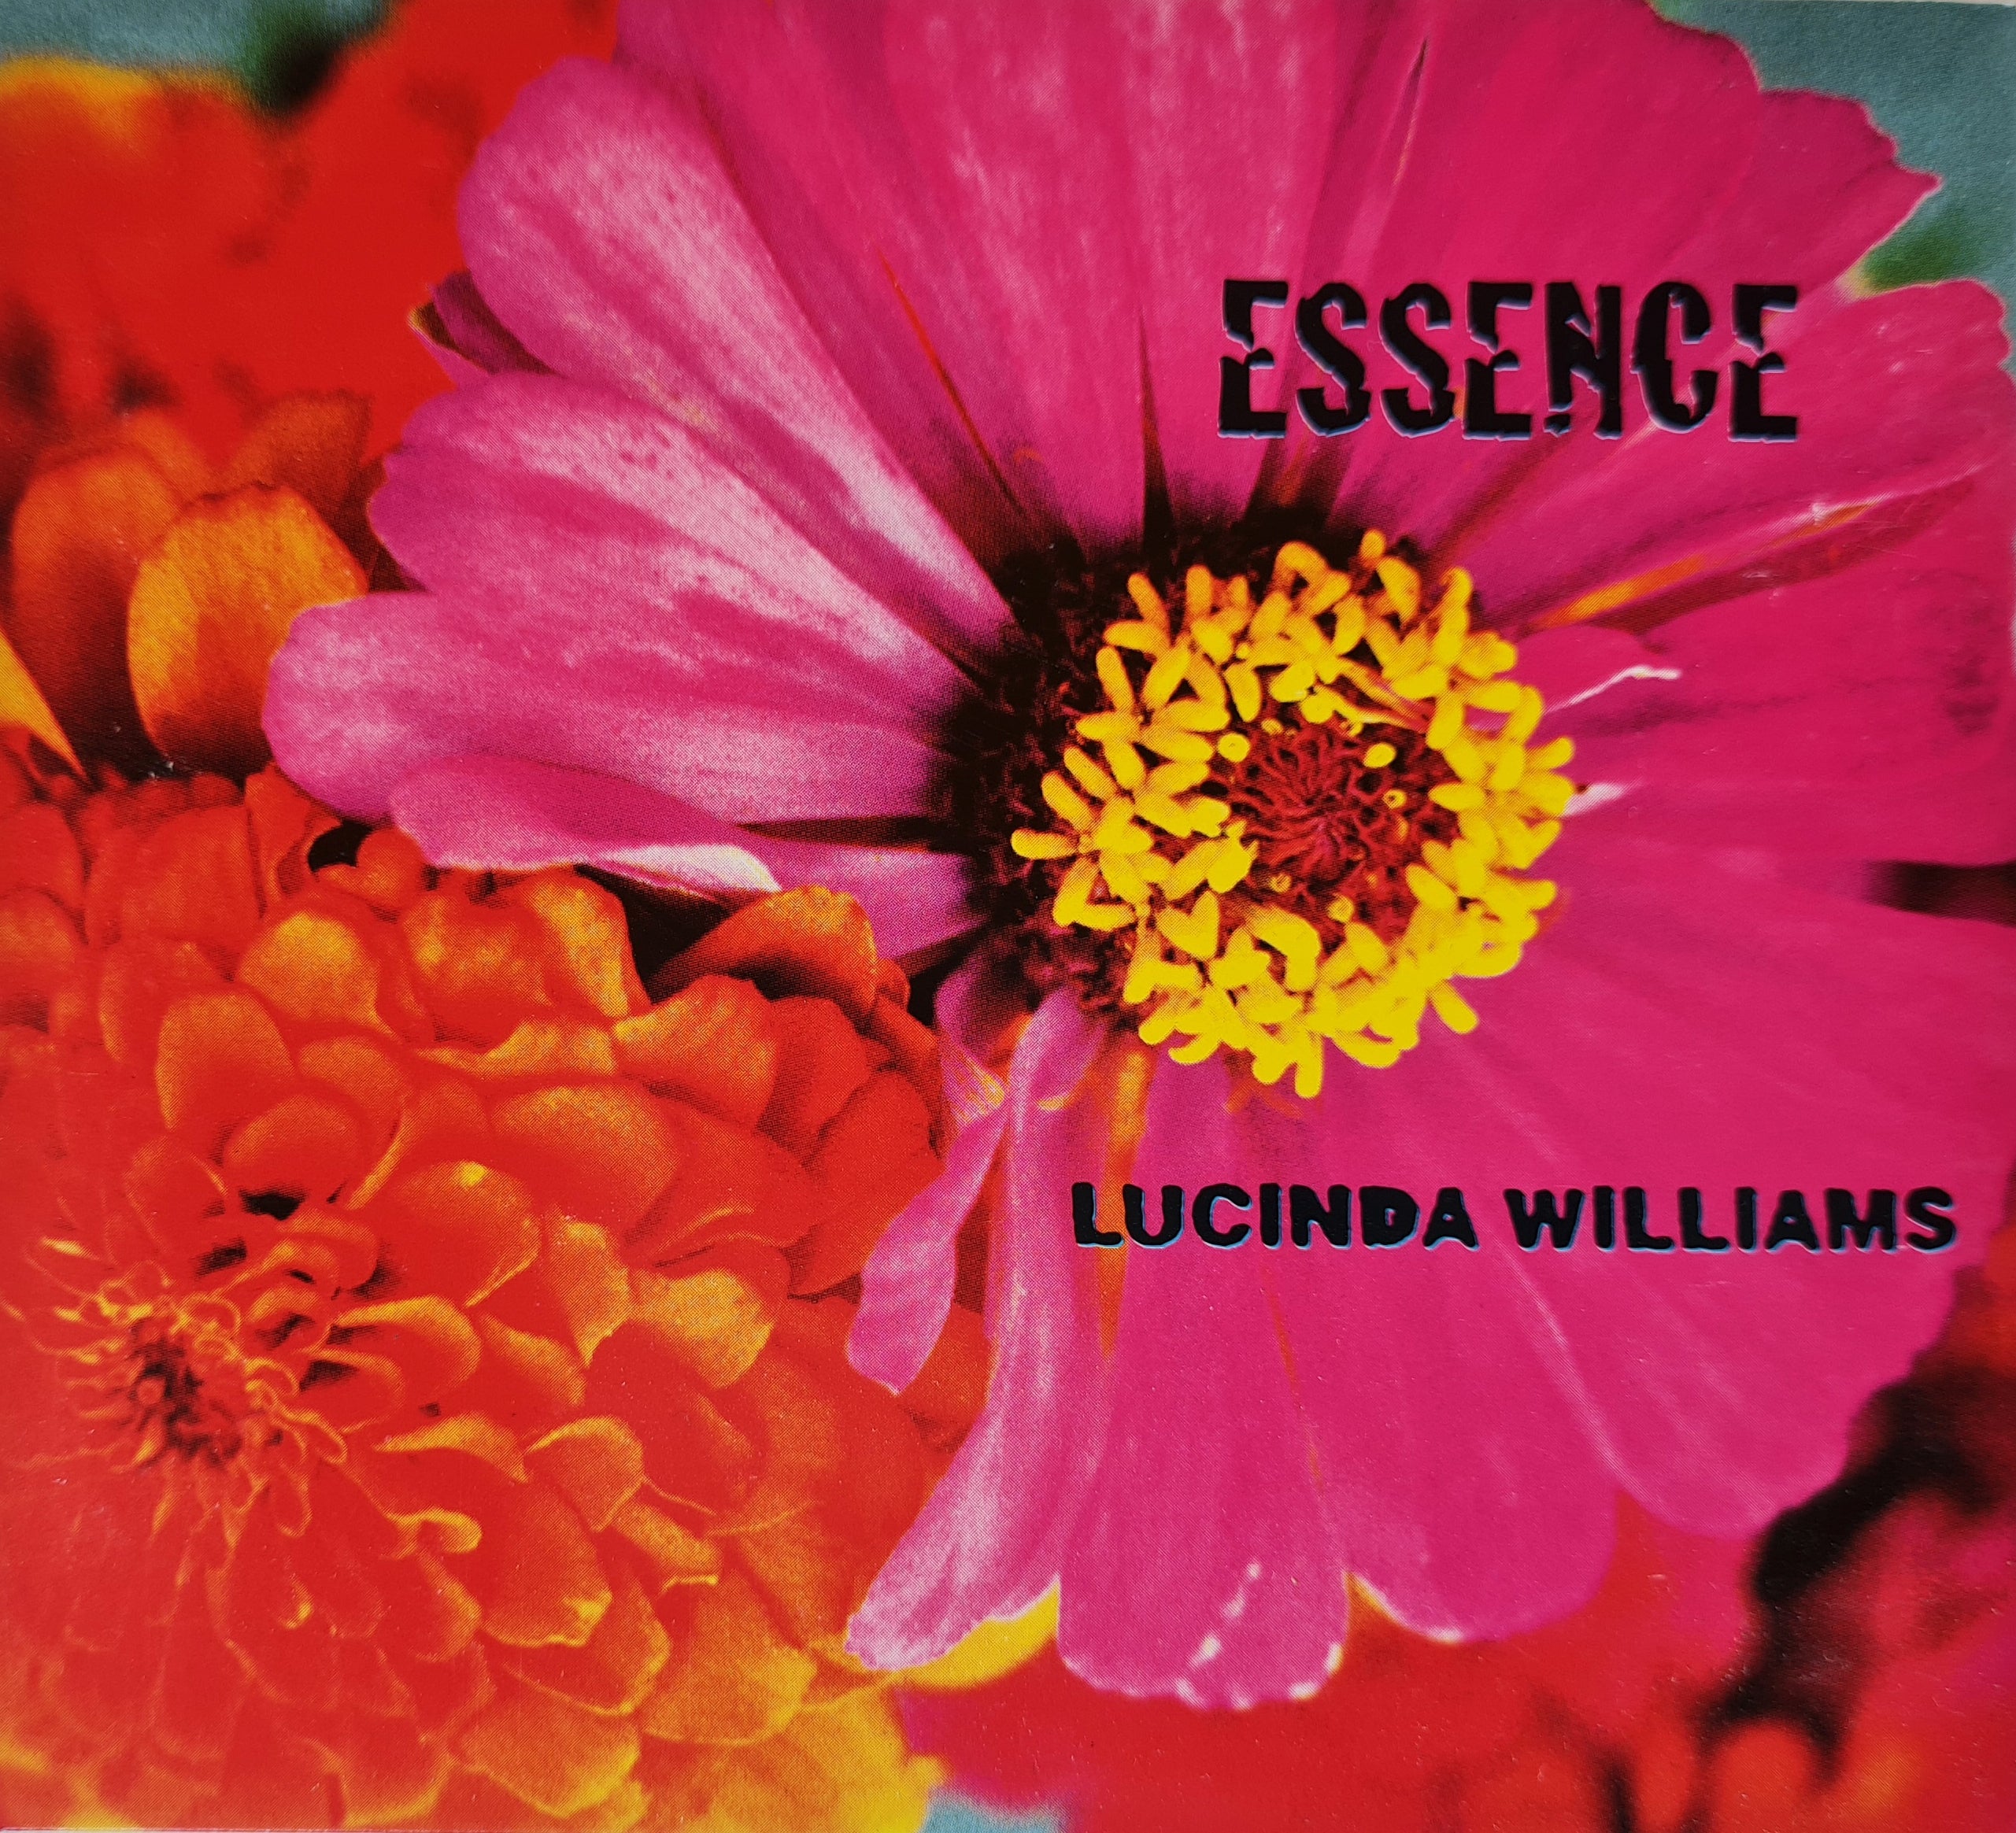 Lucinda Williams - Essence (CD)